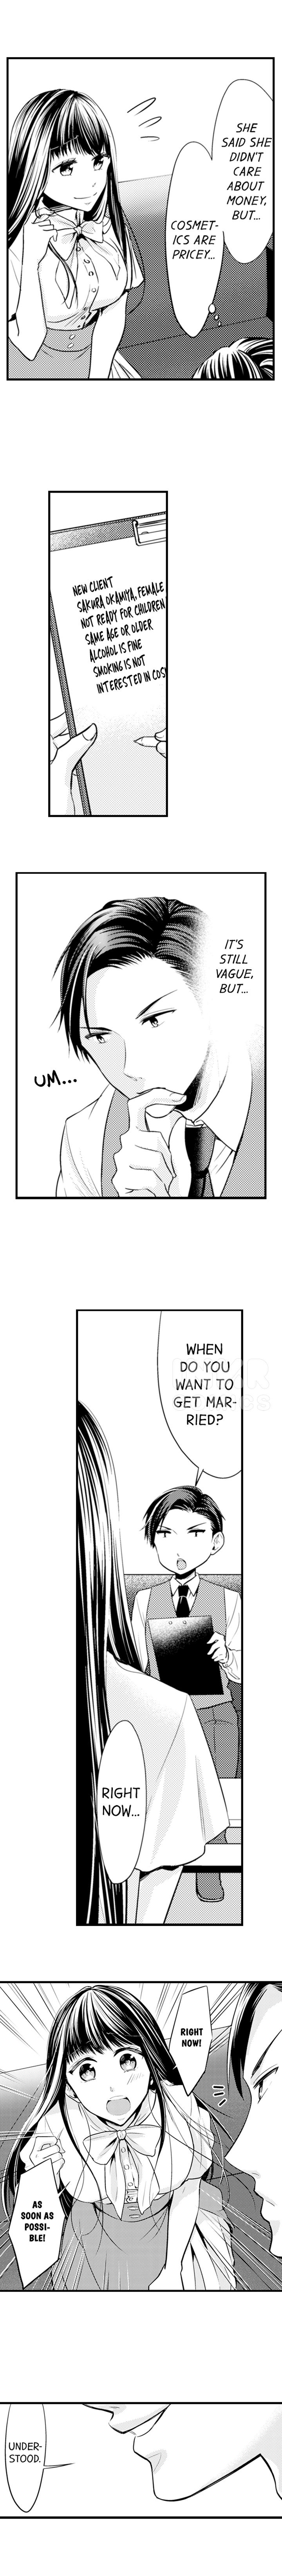 Sakura, The Marriage Hunting Zombie - Page 5